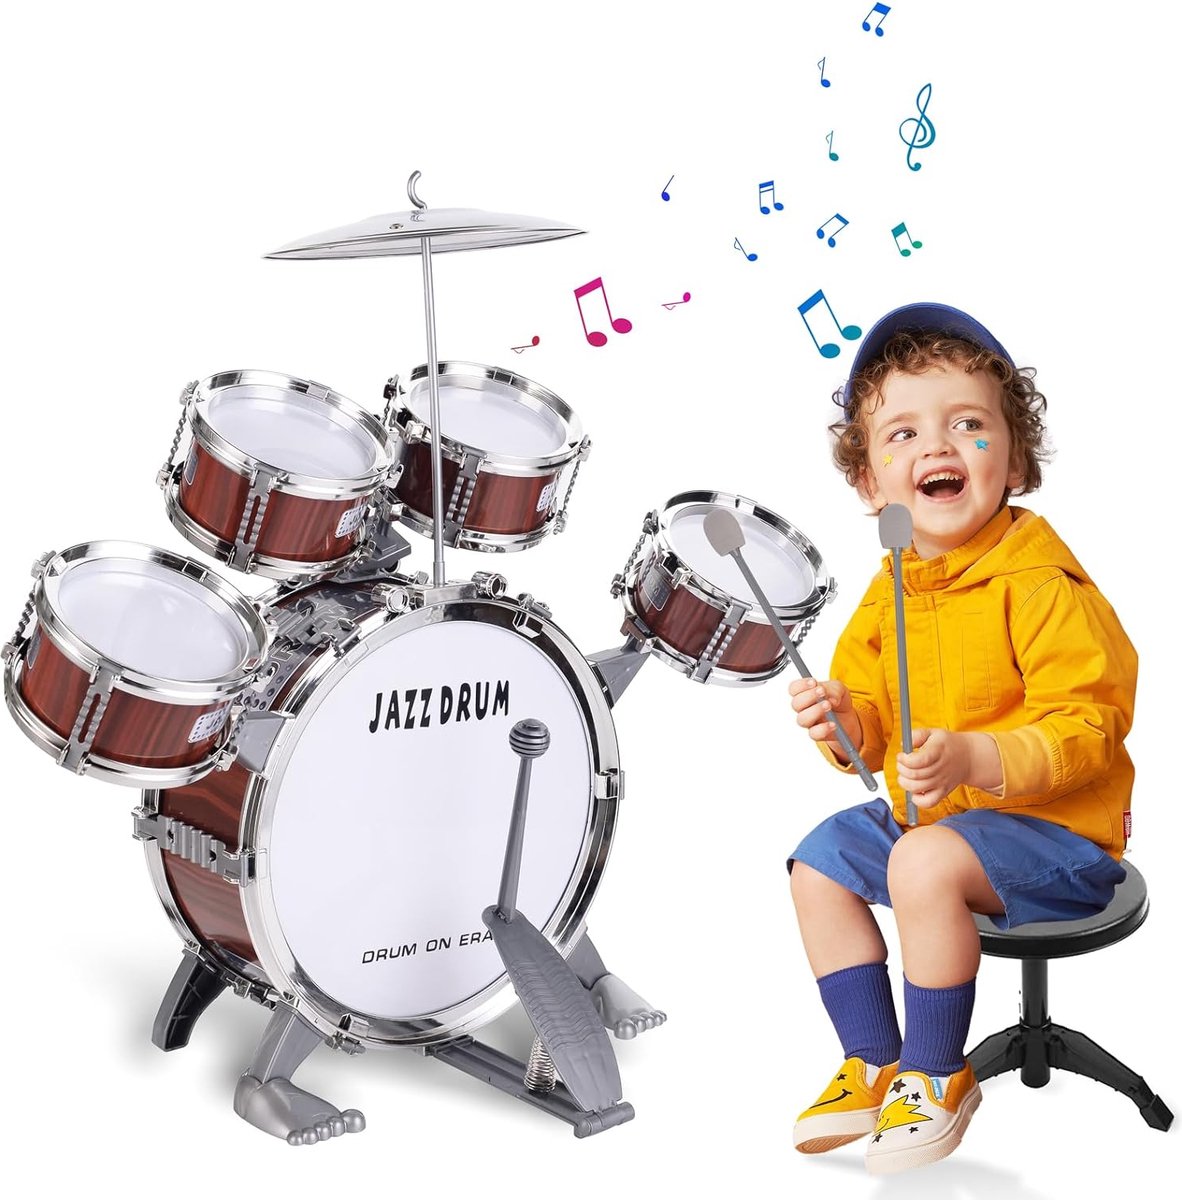 Kinderdrumset Peuter Jazz Drum Kit 10 Stuks Speelgoed met Kruk Pedaal Percussie Muziekinstrumenten Drum Speelgoed Vroeg Onderwijs Kerst Verjaardagscadeau Speelgoed voor 3 4 5 6 Jaar oude Kinderen